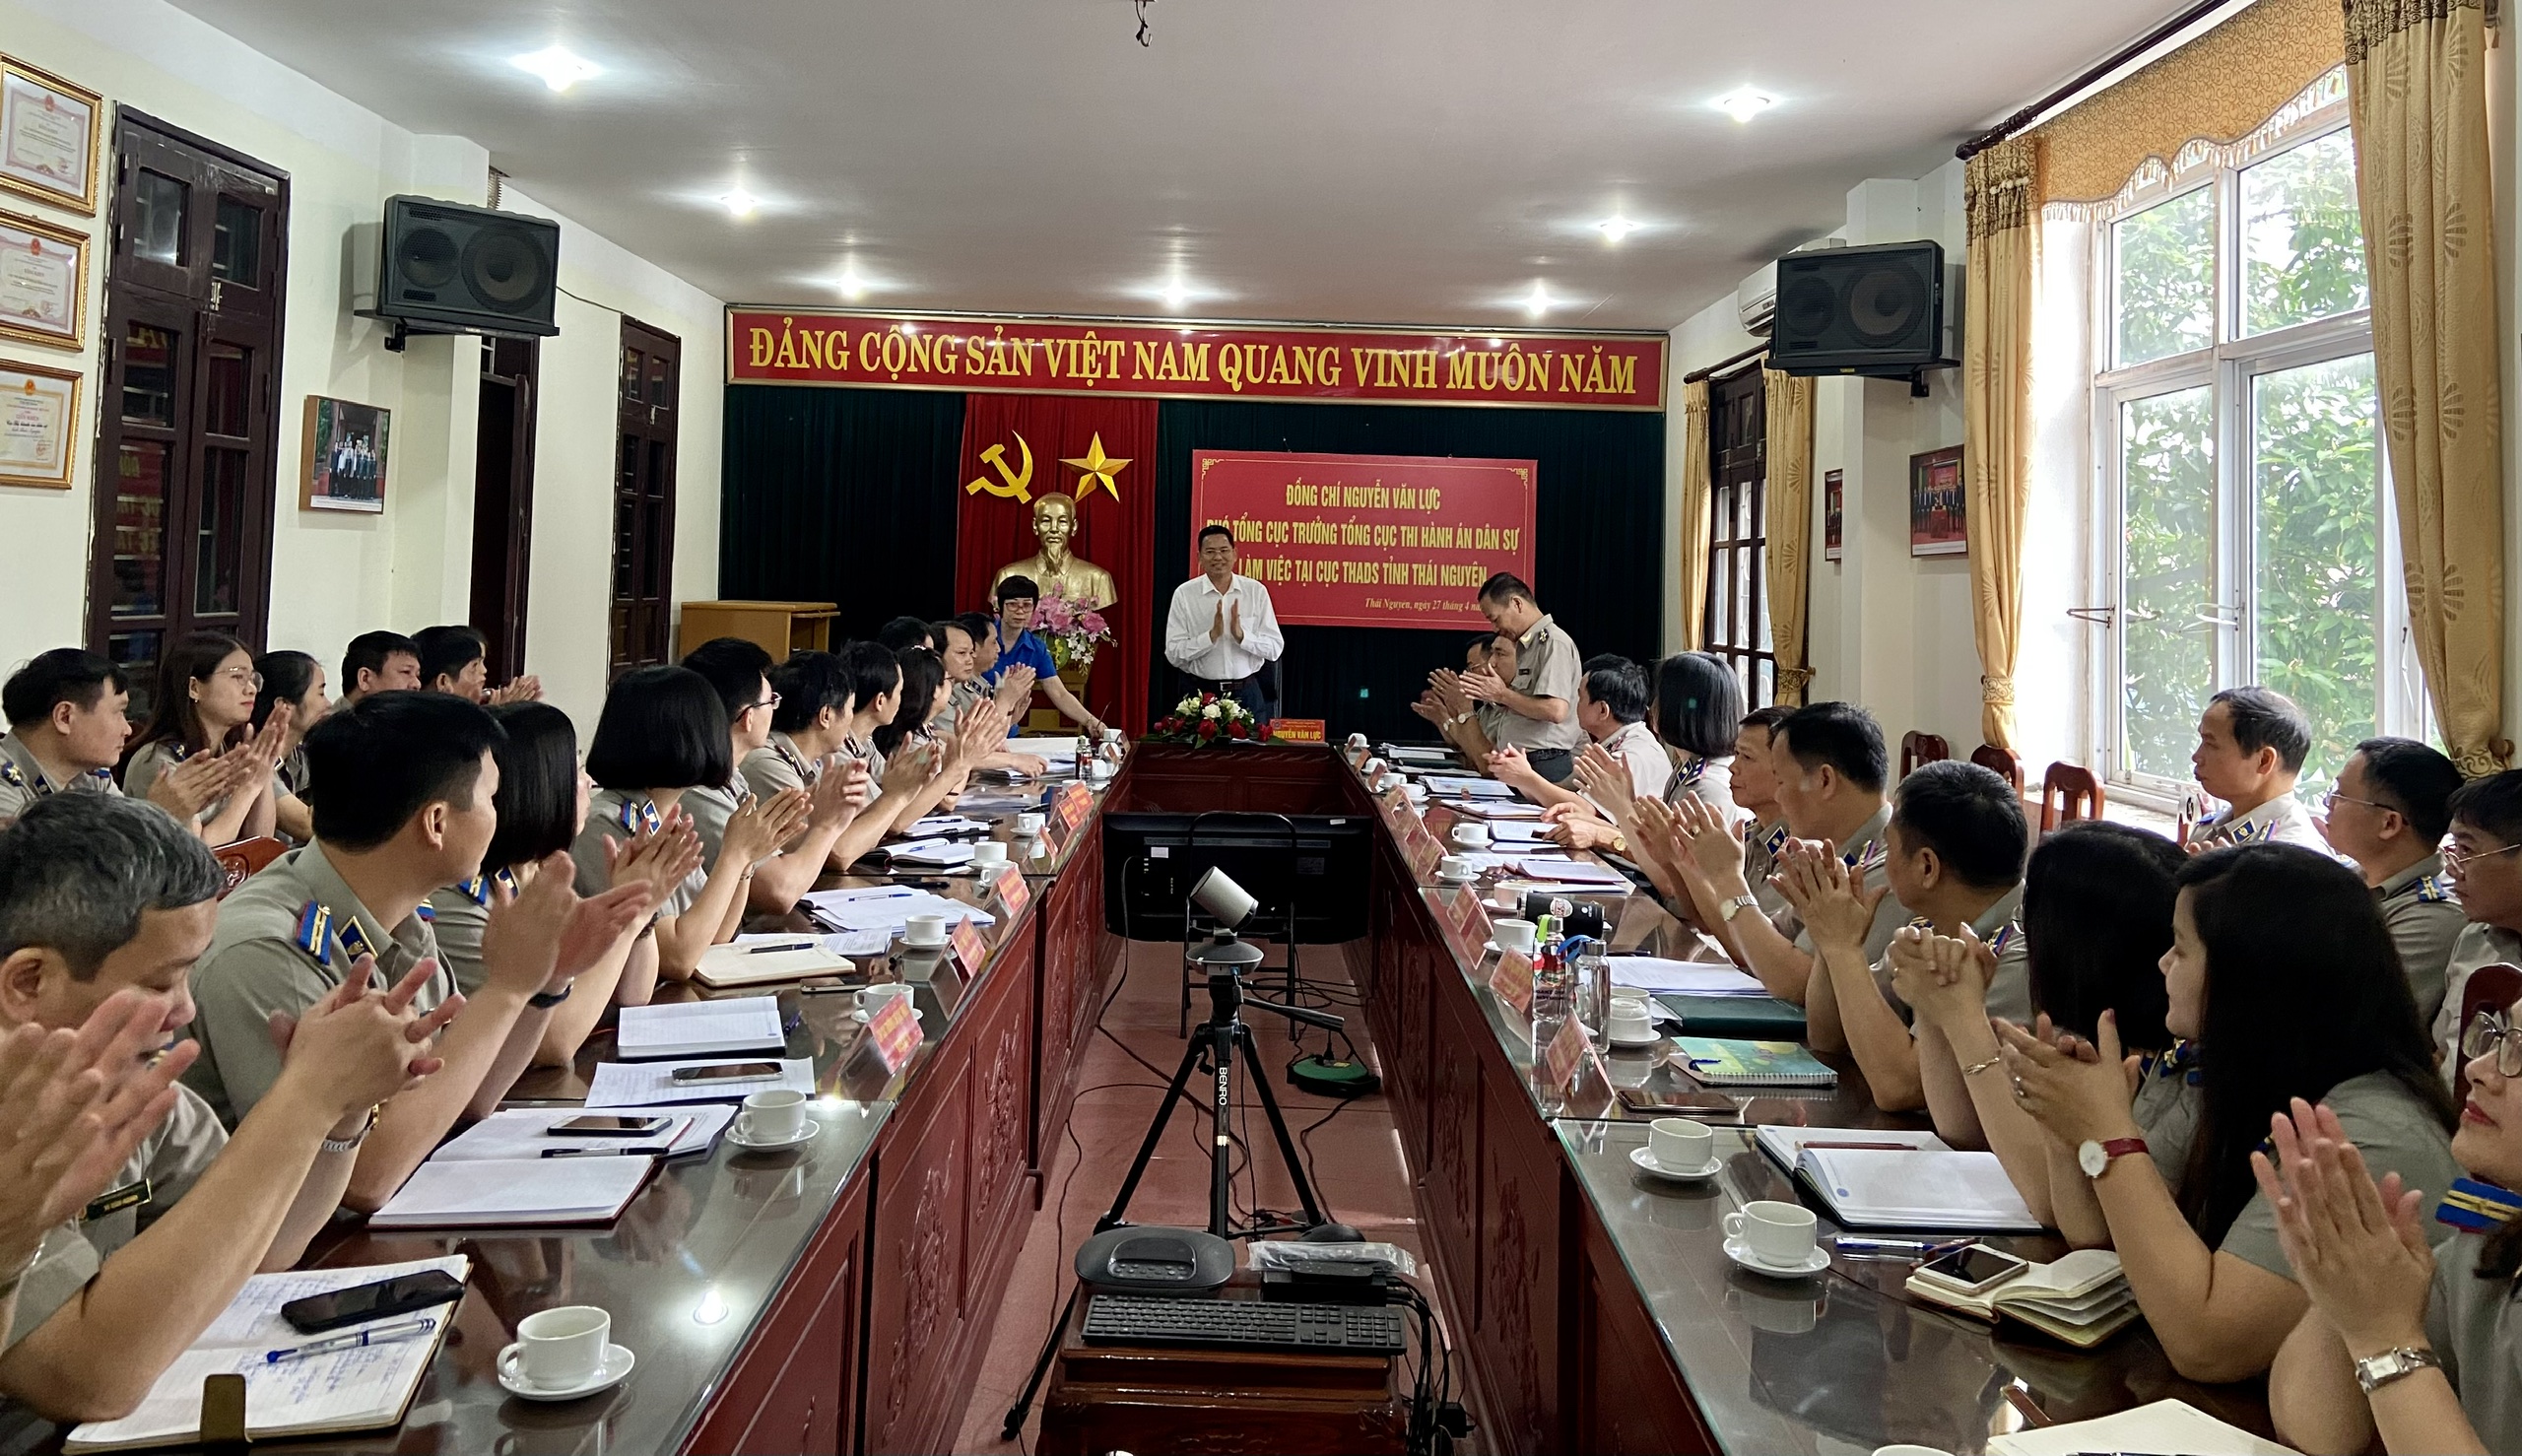 Đồng chí Nguyễn Văn Lực Phó Tổng cục trưởng Tổng cục THADS  làm việc tại Cục THADS tỉnh Thái Nguyên